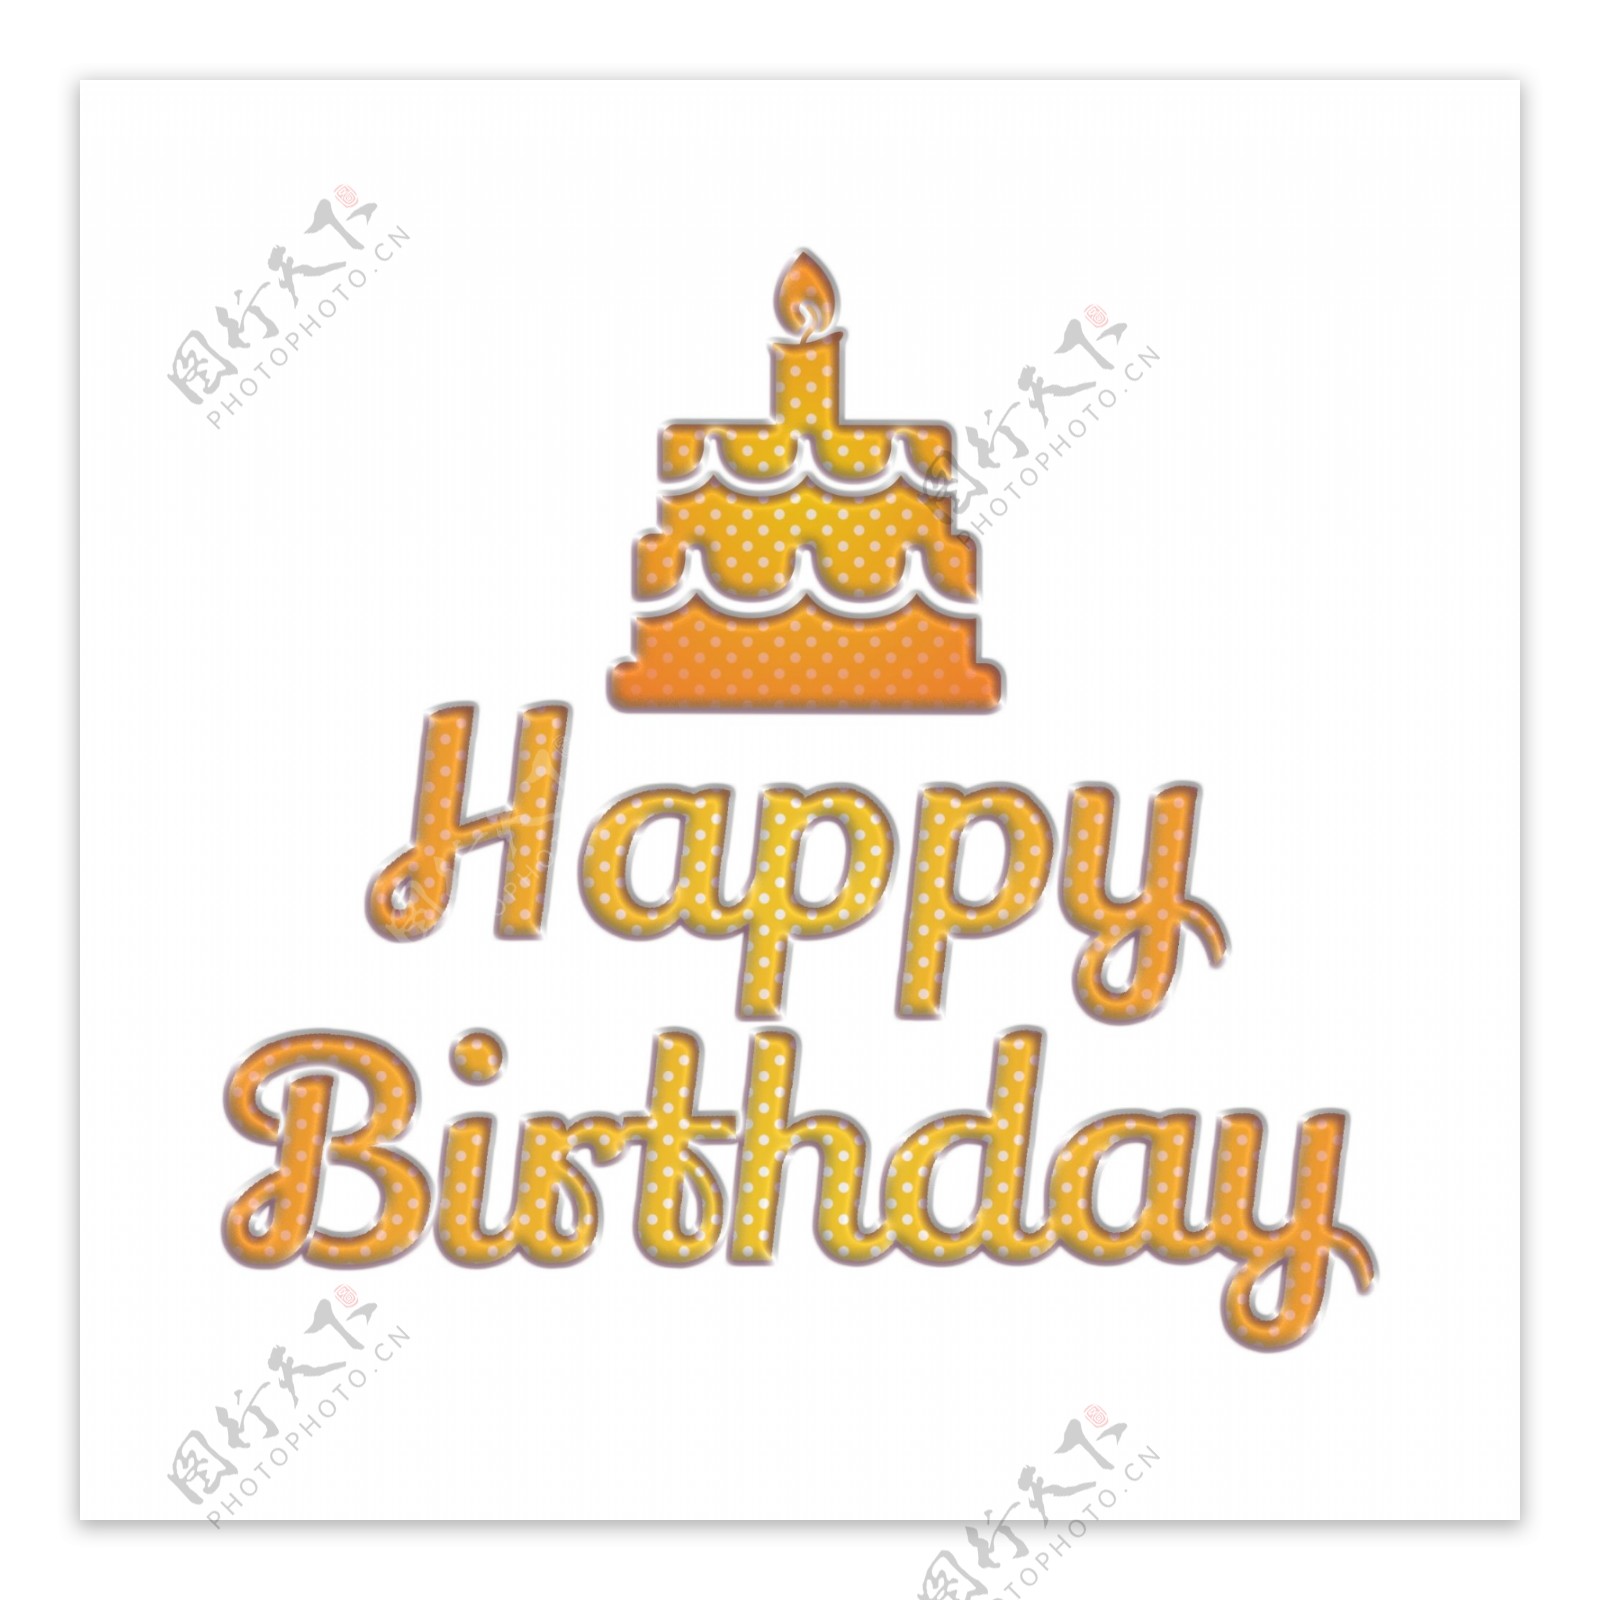 与生日蛋糕的明亮的生日快乐抽象字体